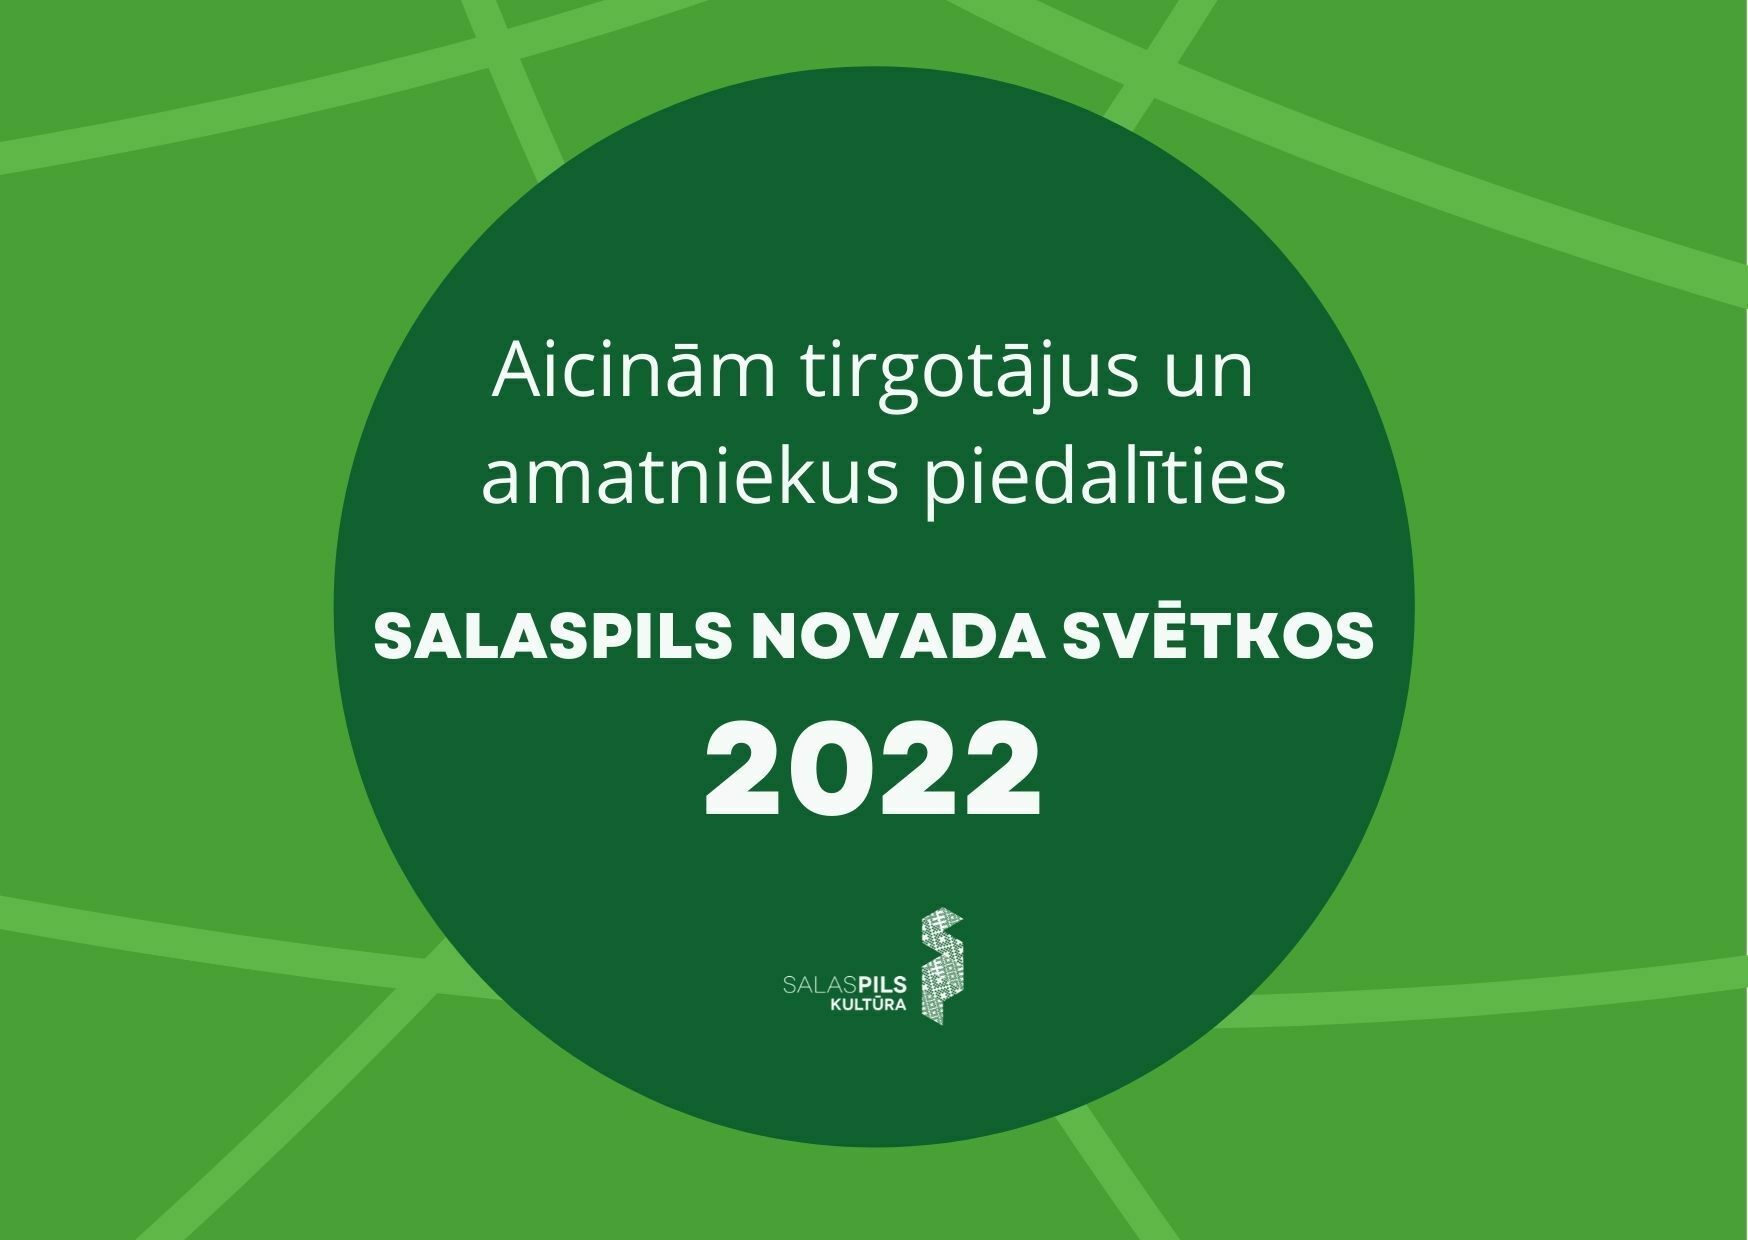 Aicinām tirgotājus un amatniekus piedalīties Salaspils novada svētkos 2022